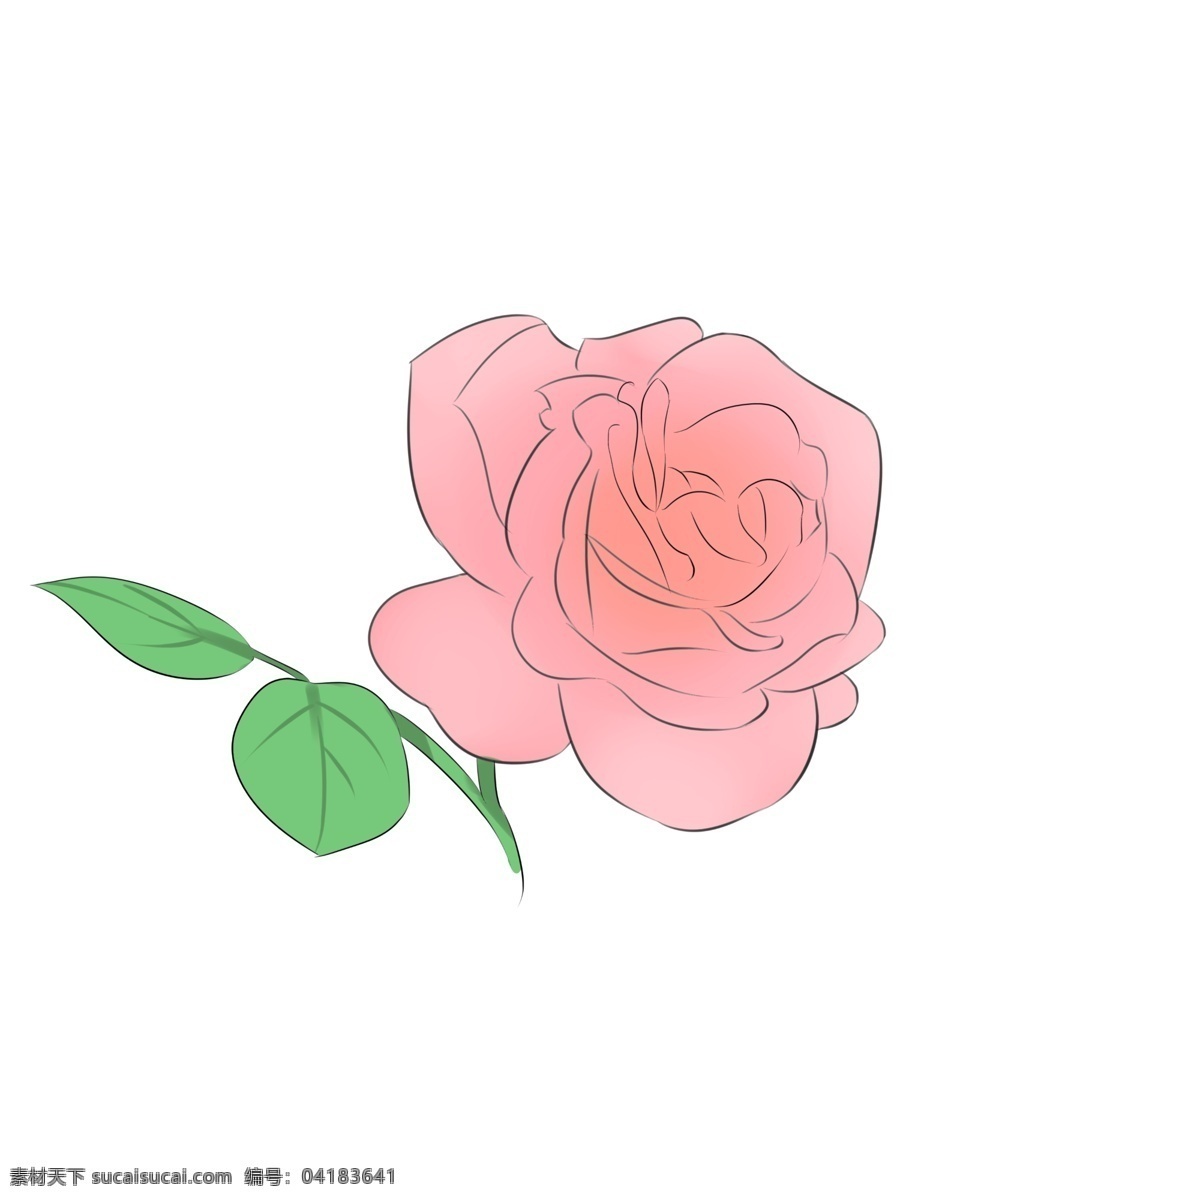 朵 红色 玫瑰 插画 玫瑰花 一朵玫瑰 一朵花 红色玫瑰 漂亮的红玫瑰 玫瑰花插图 绿色叶子